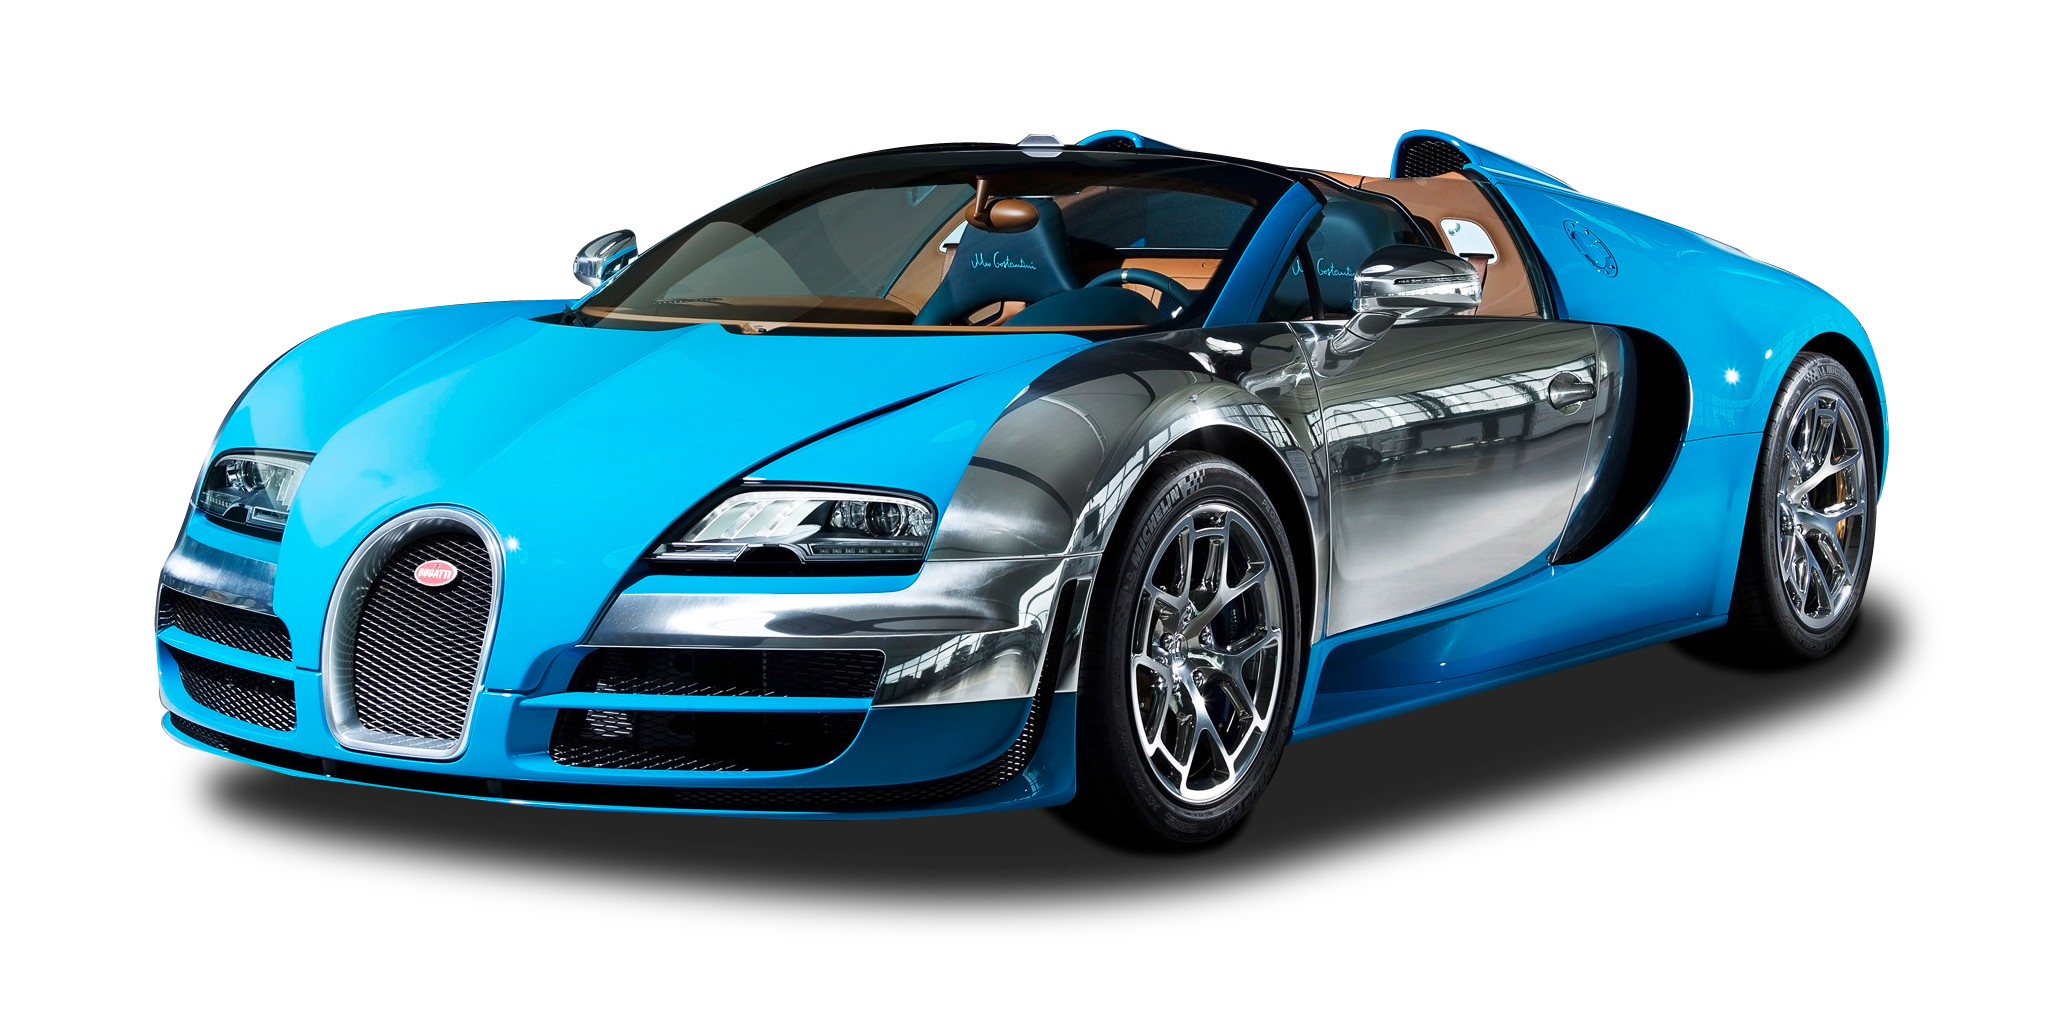 Bugatti Veyron Grand Sport Vitesse Meo Car PNG Image